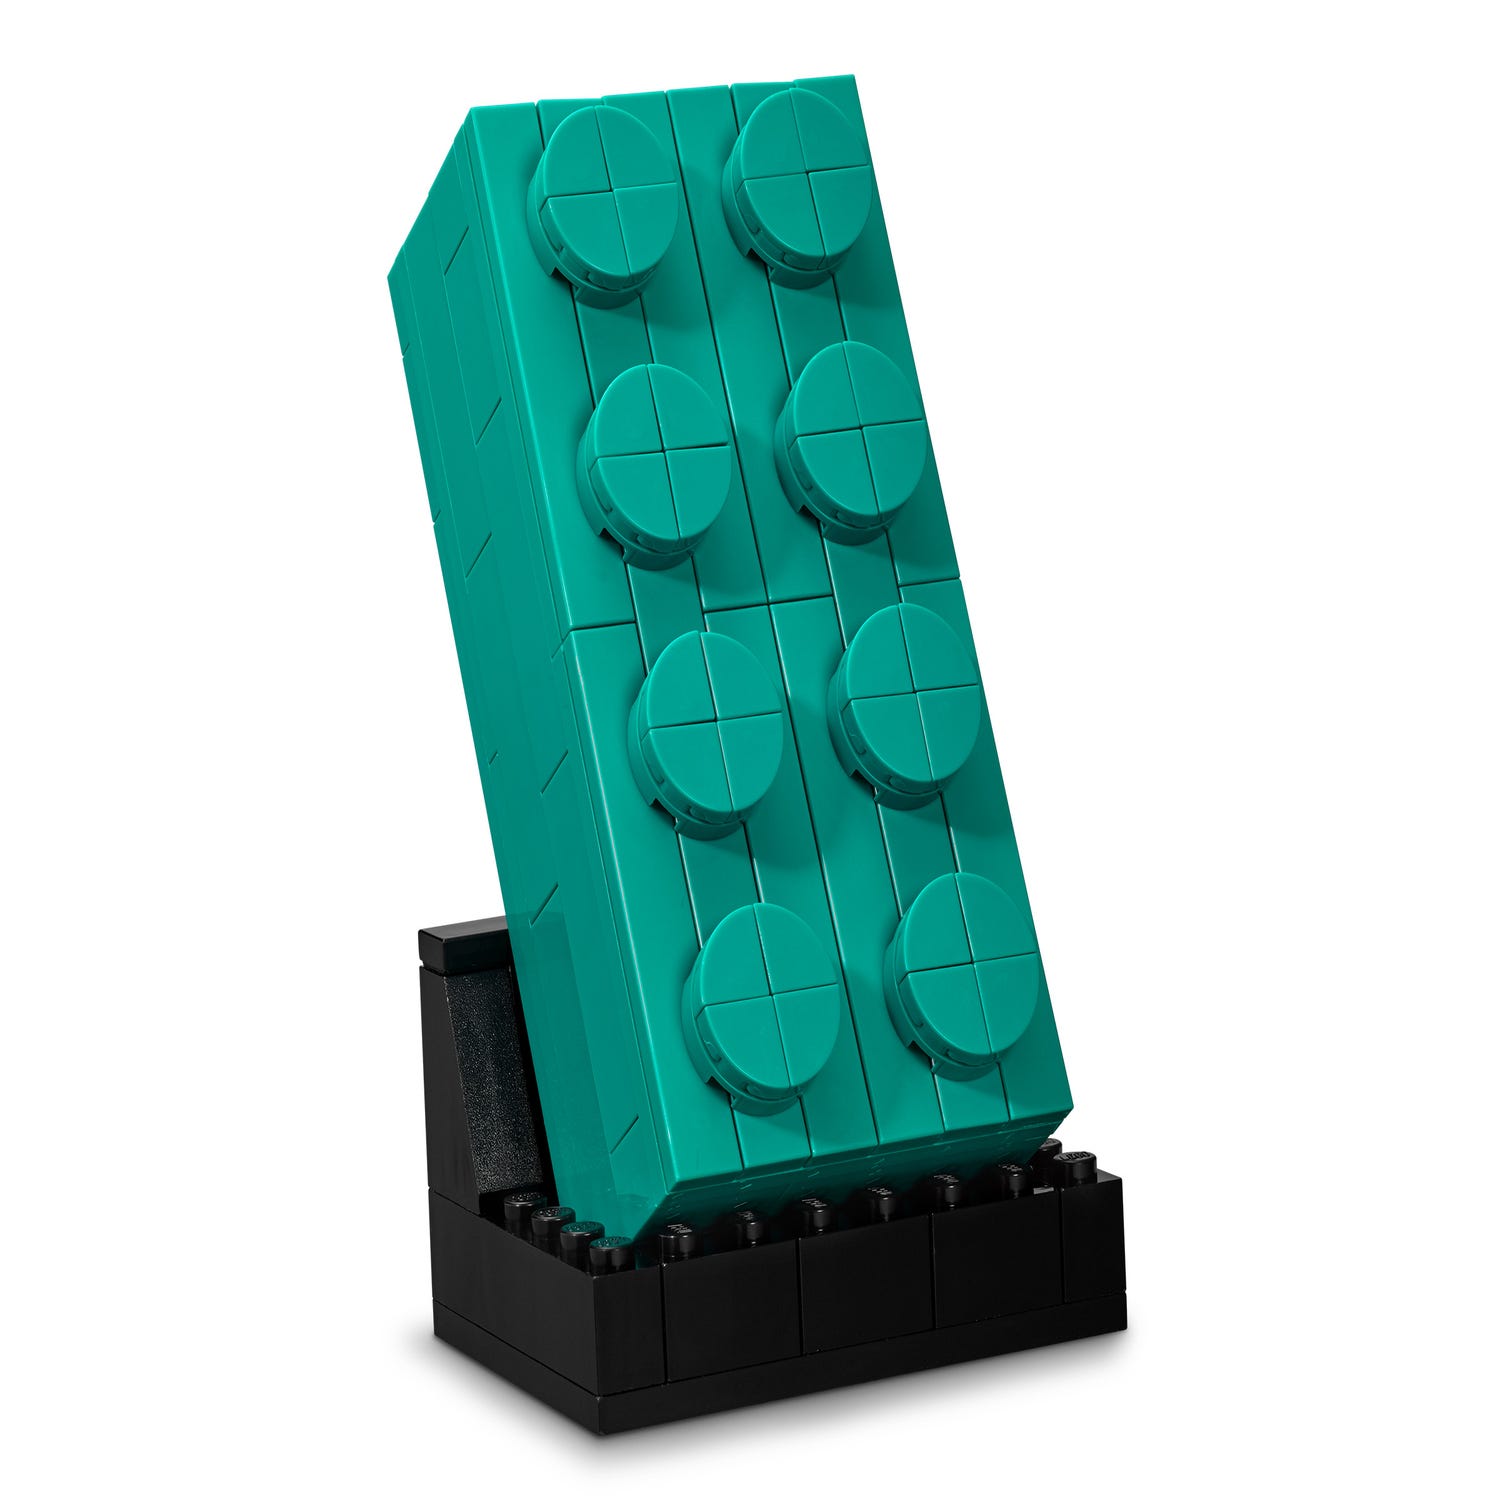 Los vasos de plástico LEGO Pick a Brick ya no son válidos en las tiendas